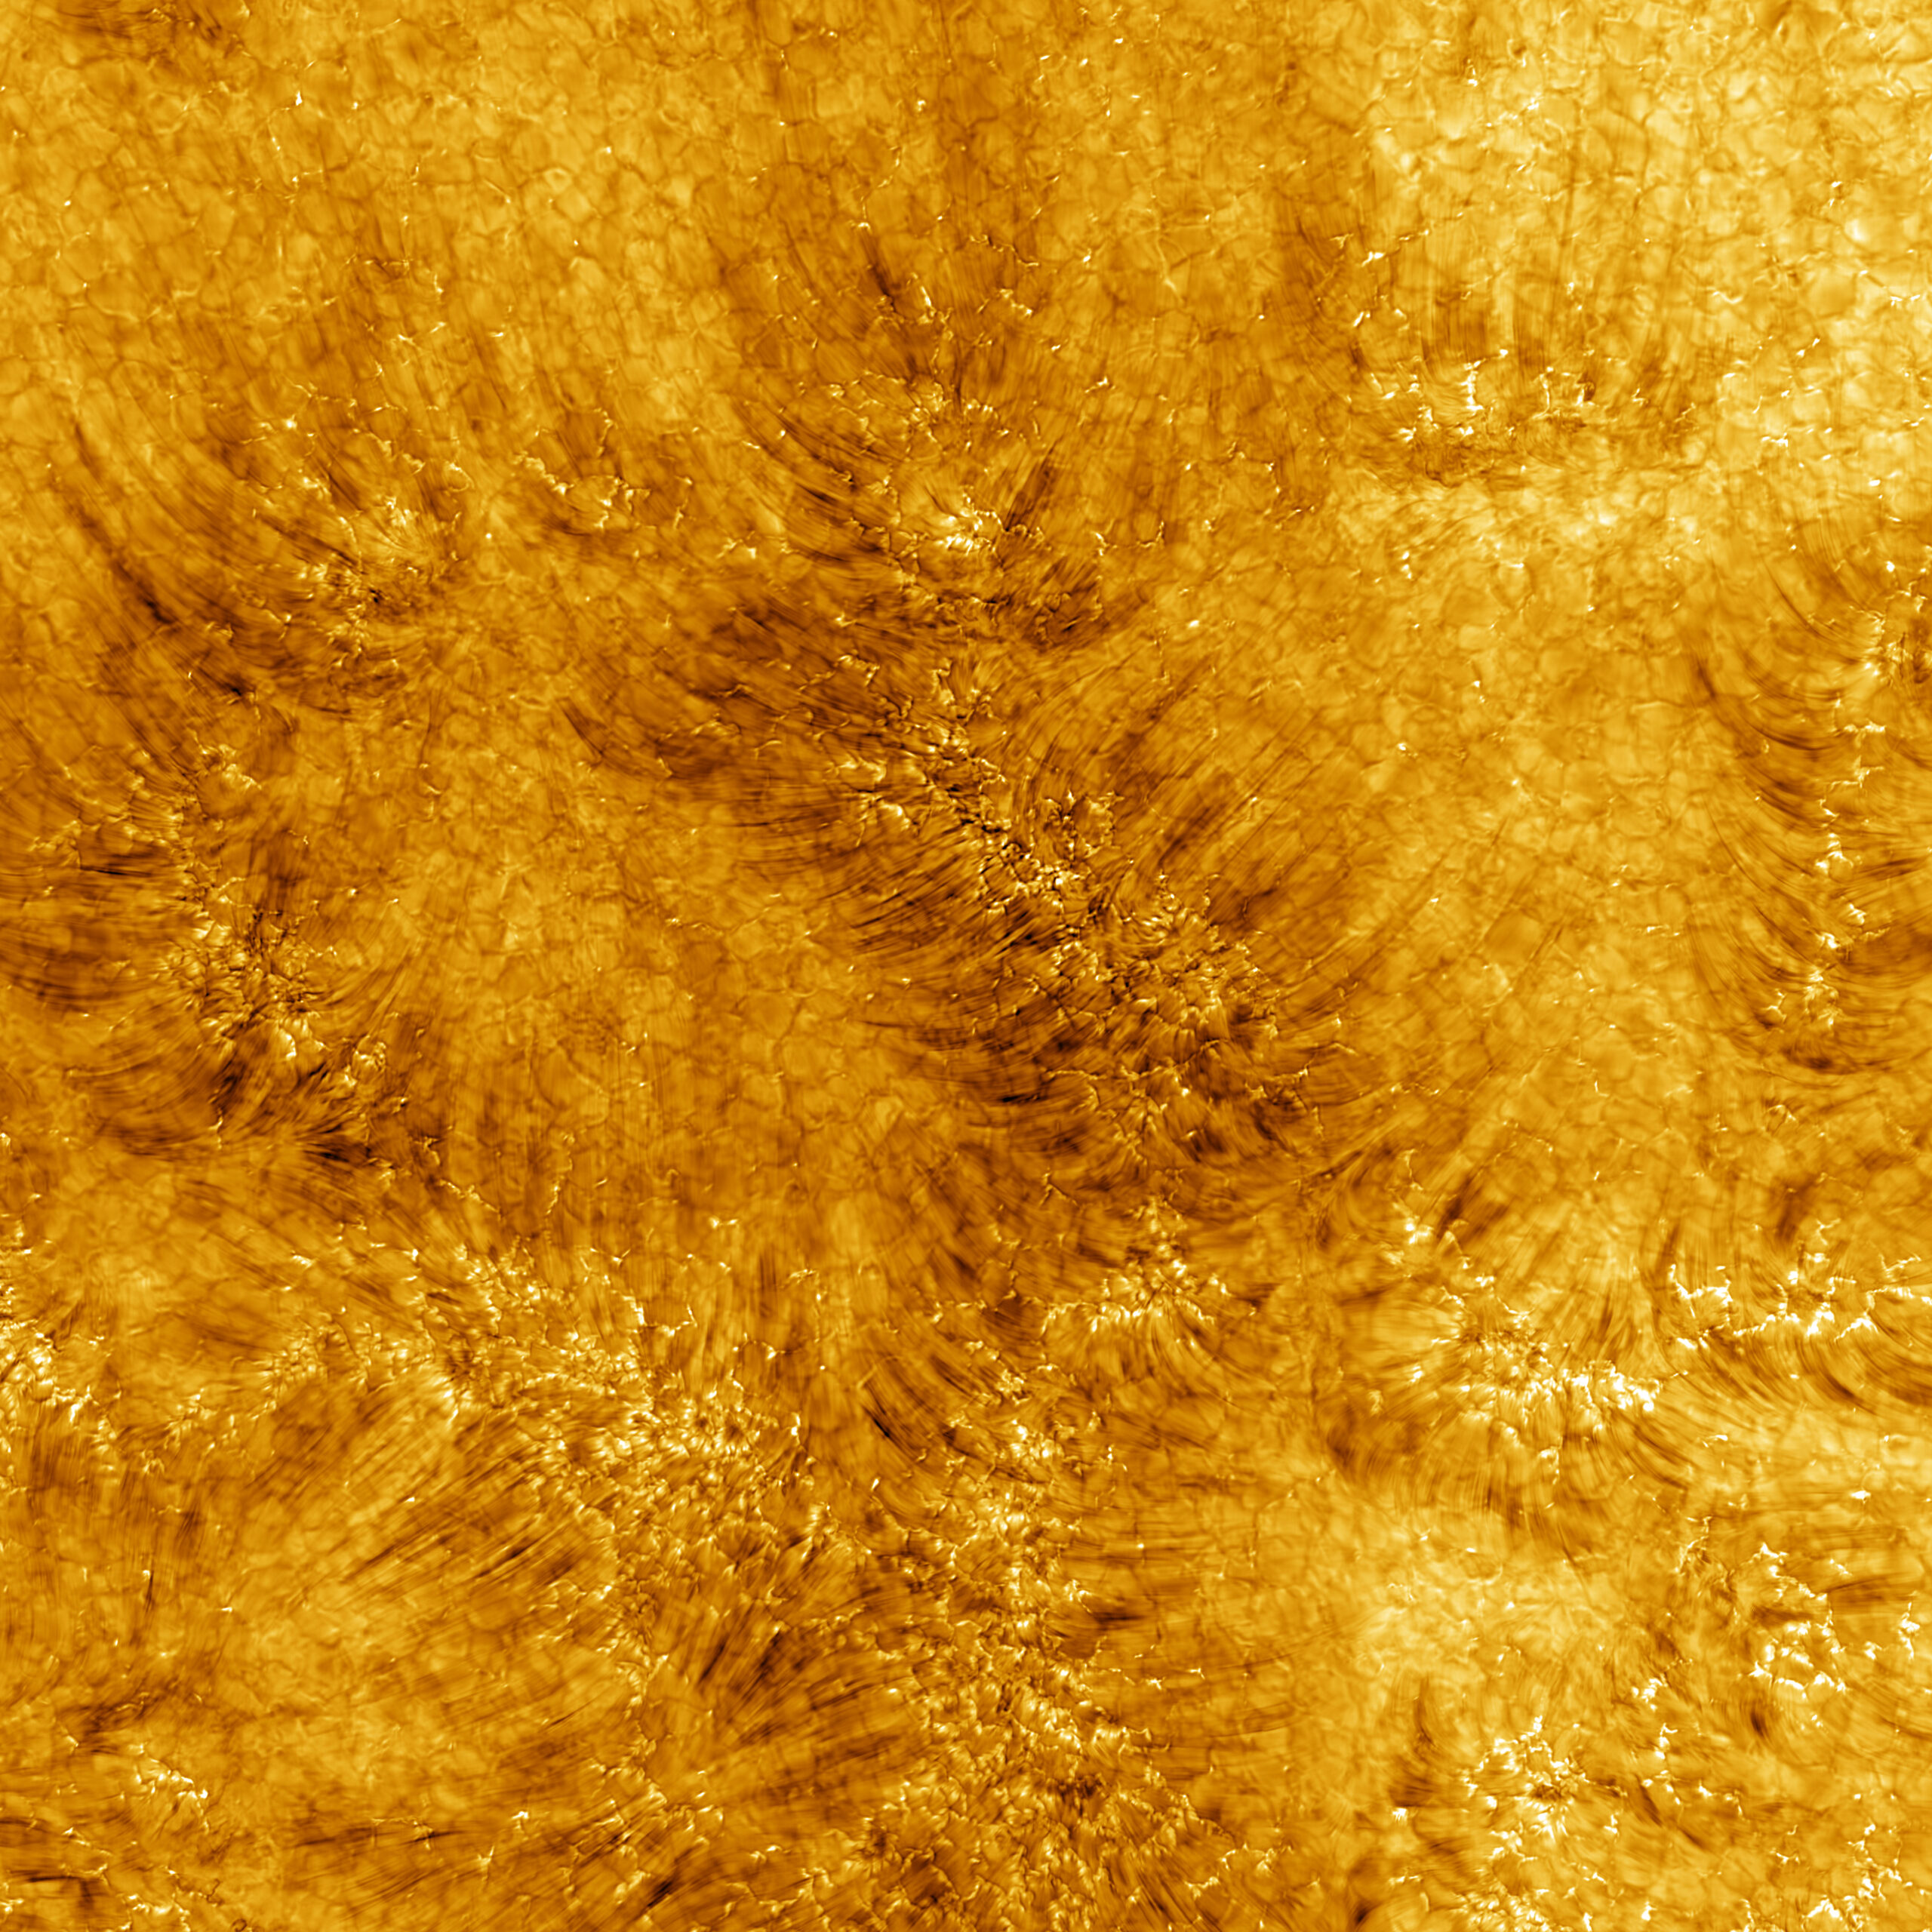 Die ersten Bilder der Chromosphäre – dem Bereich der Sonnenatmosphäre über der Oberfläche.